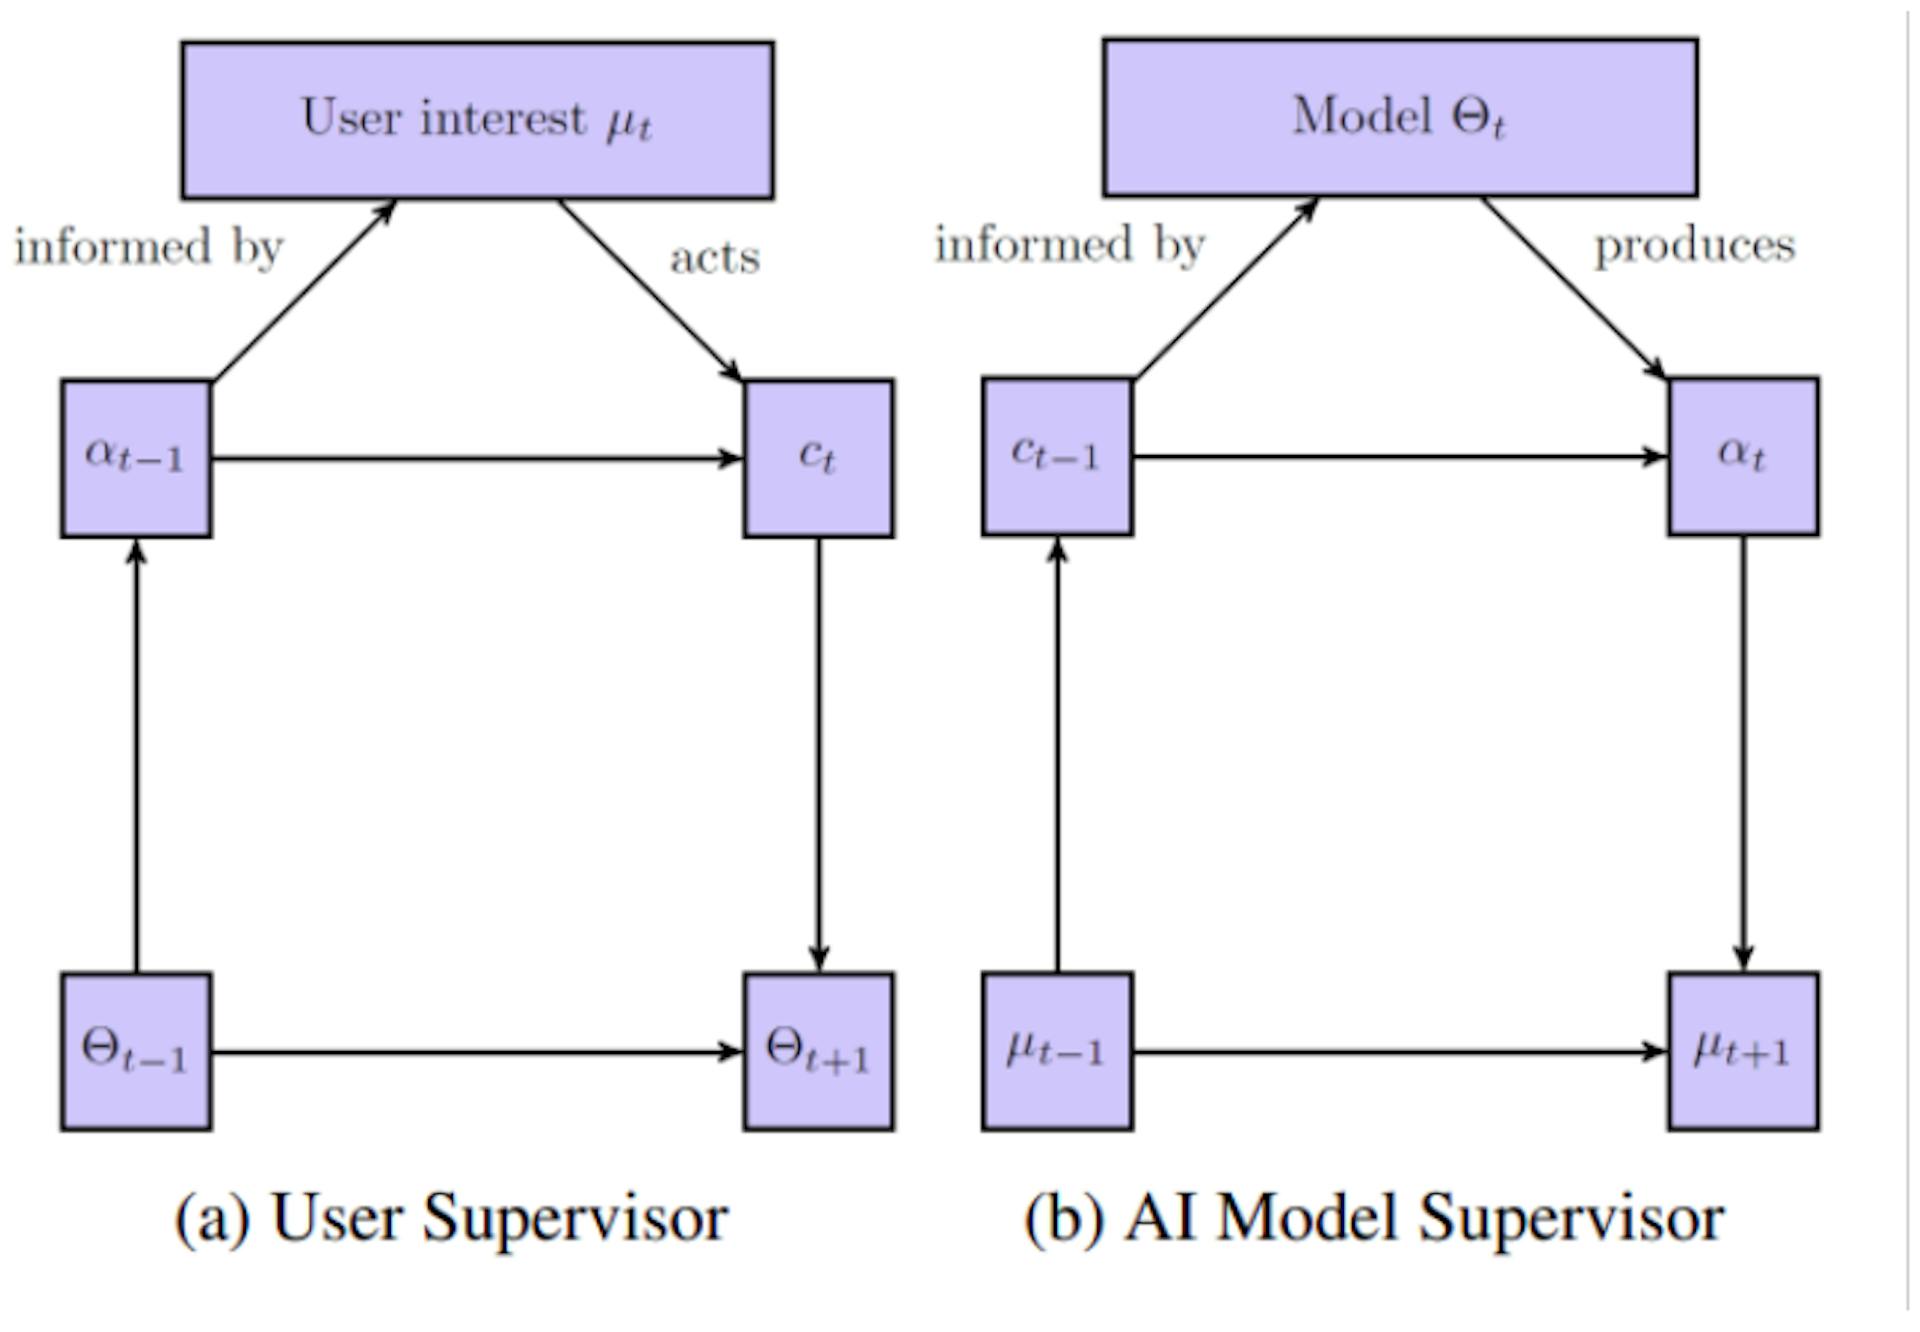 Figura 1: Una representación esquemática del flujo de control en los sistemas de recomendación visto desde la perspectiva del usuario (a) y del modelo AI (b). Adaptado de Rakova y Chowdhury (2019).